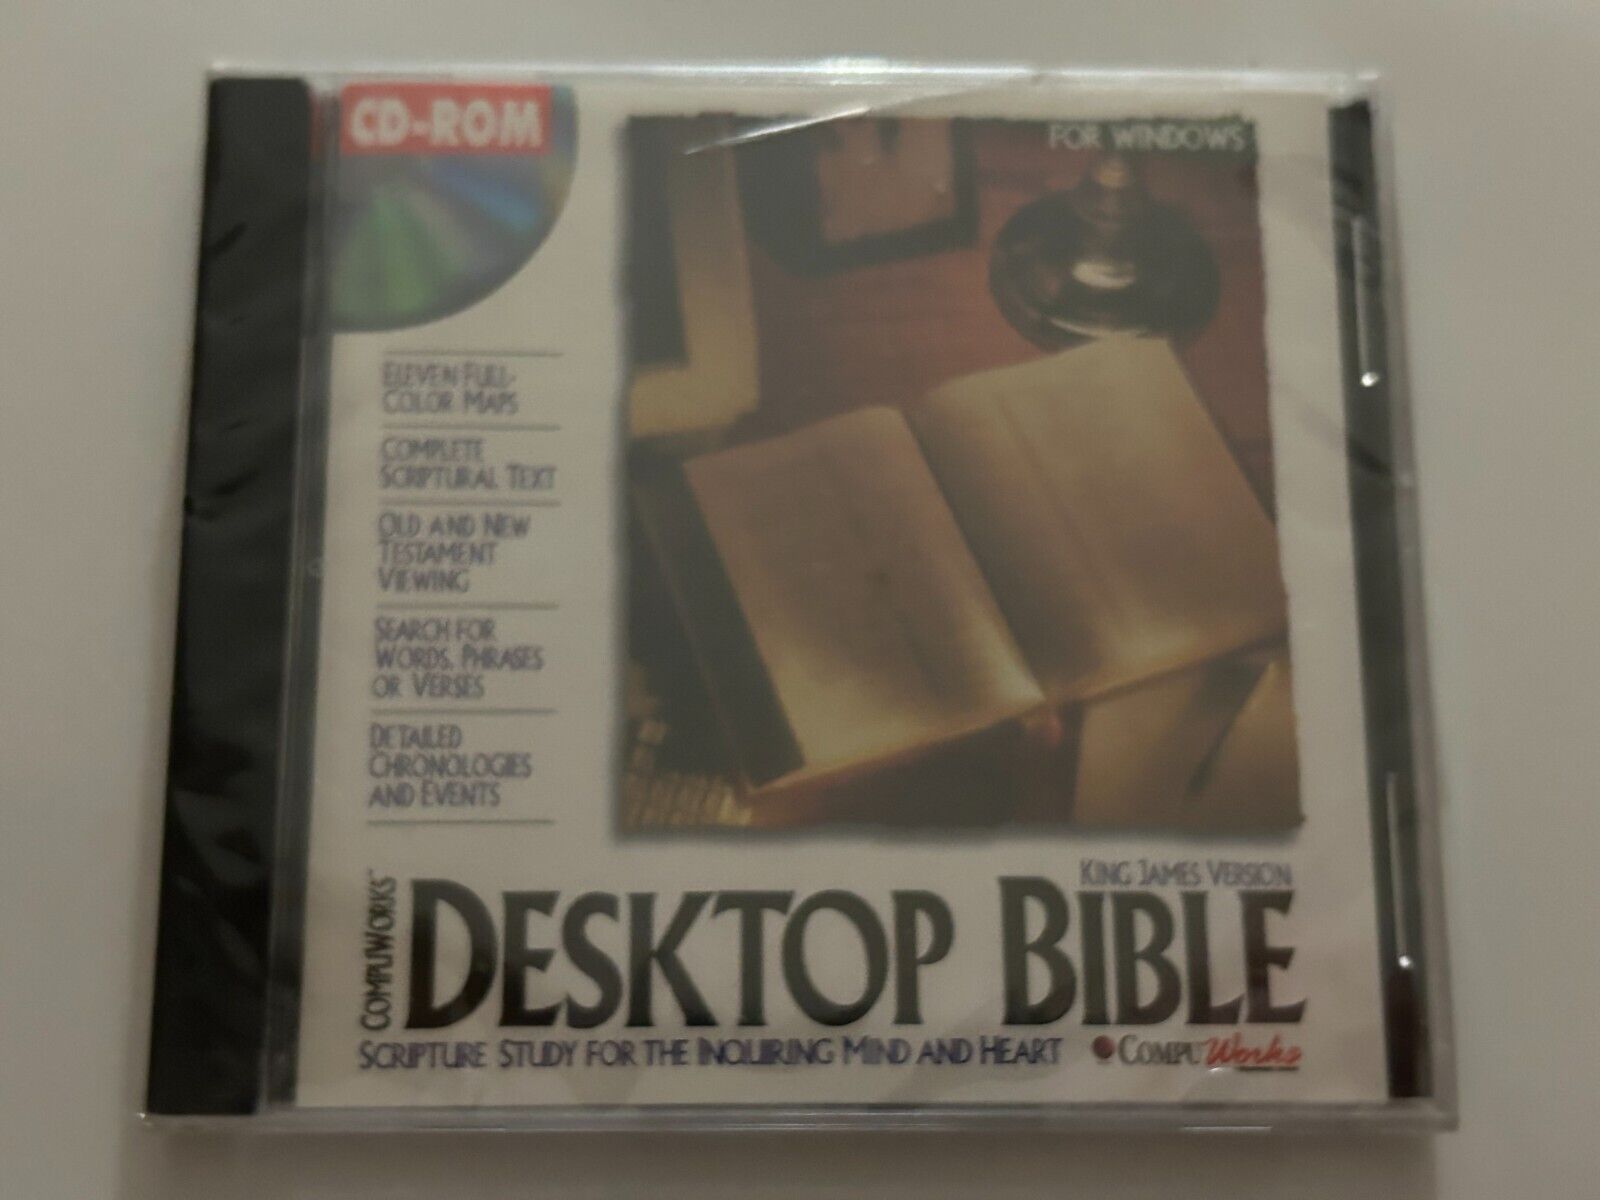 NEW - Compuworks Desktop Bible King James Version CD ROM- Sealed - 